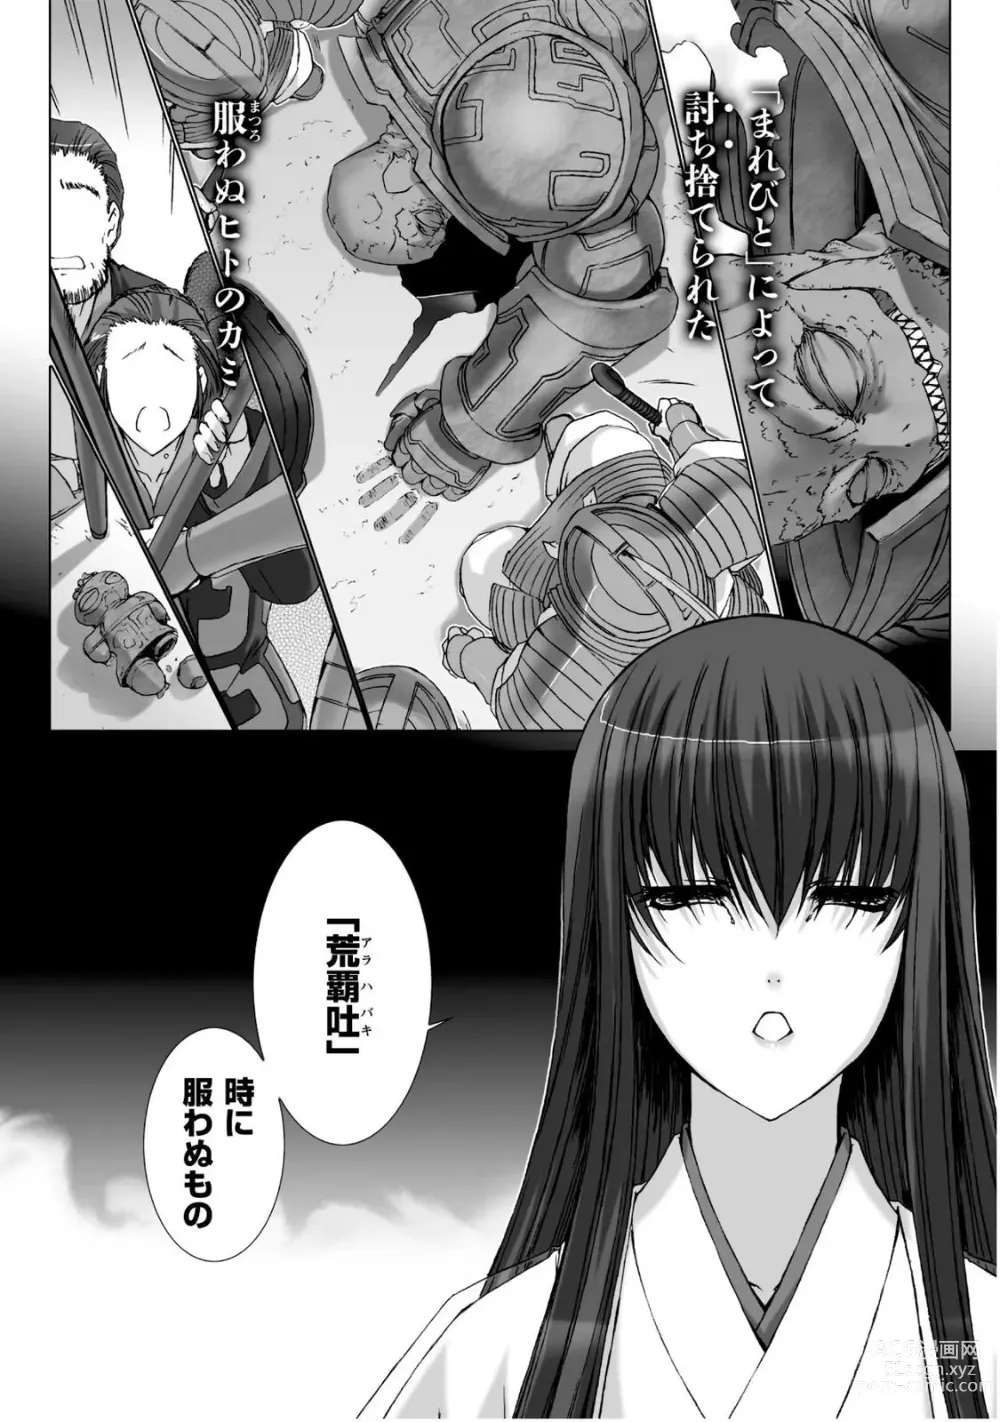 Page 187 of manga Ziggurat 5